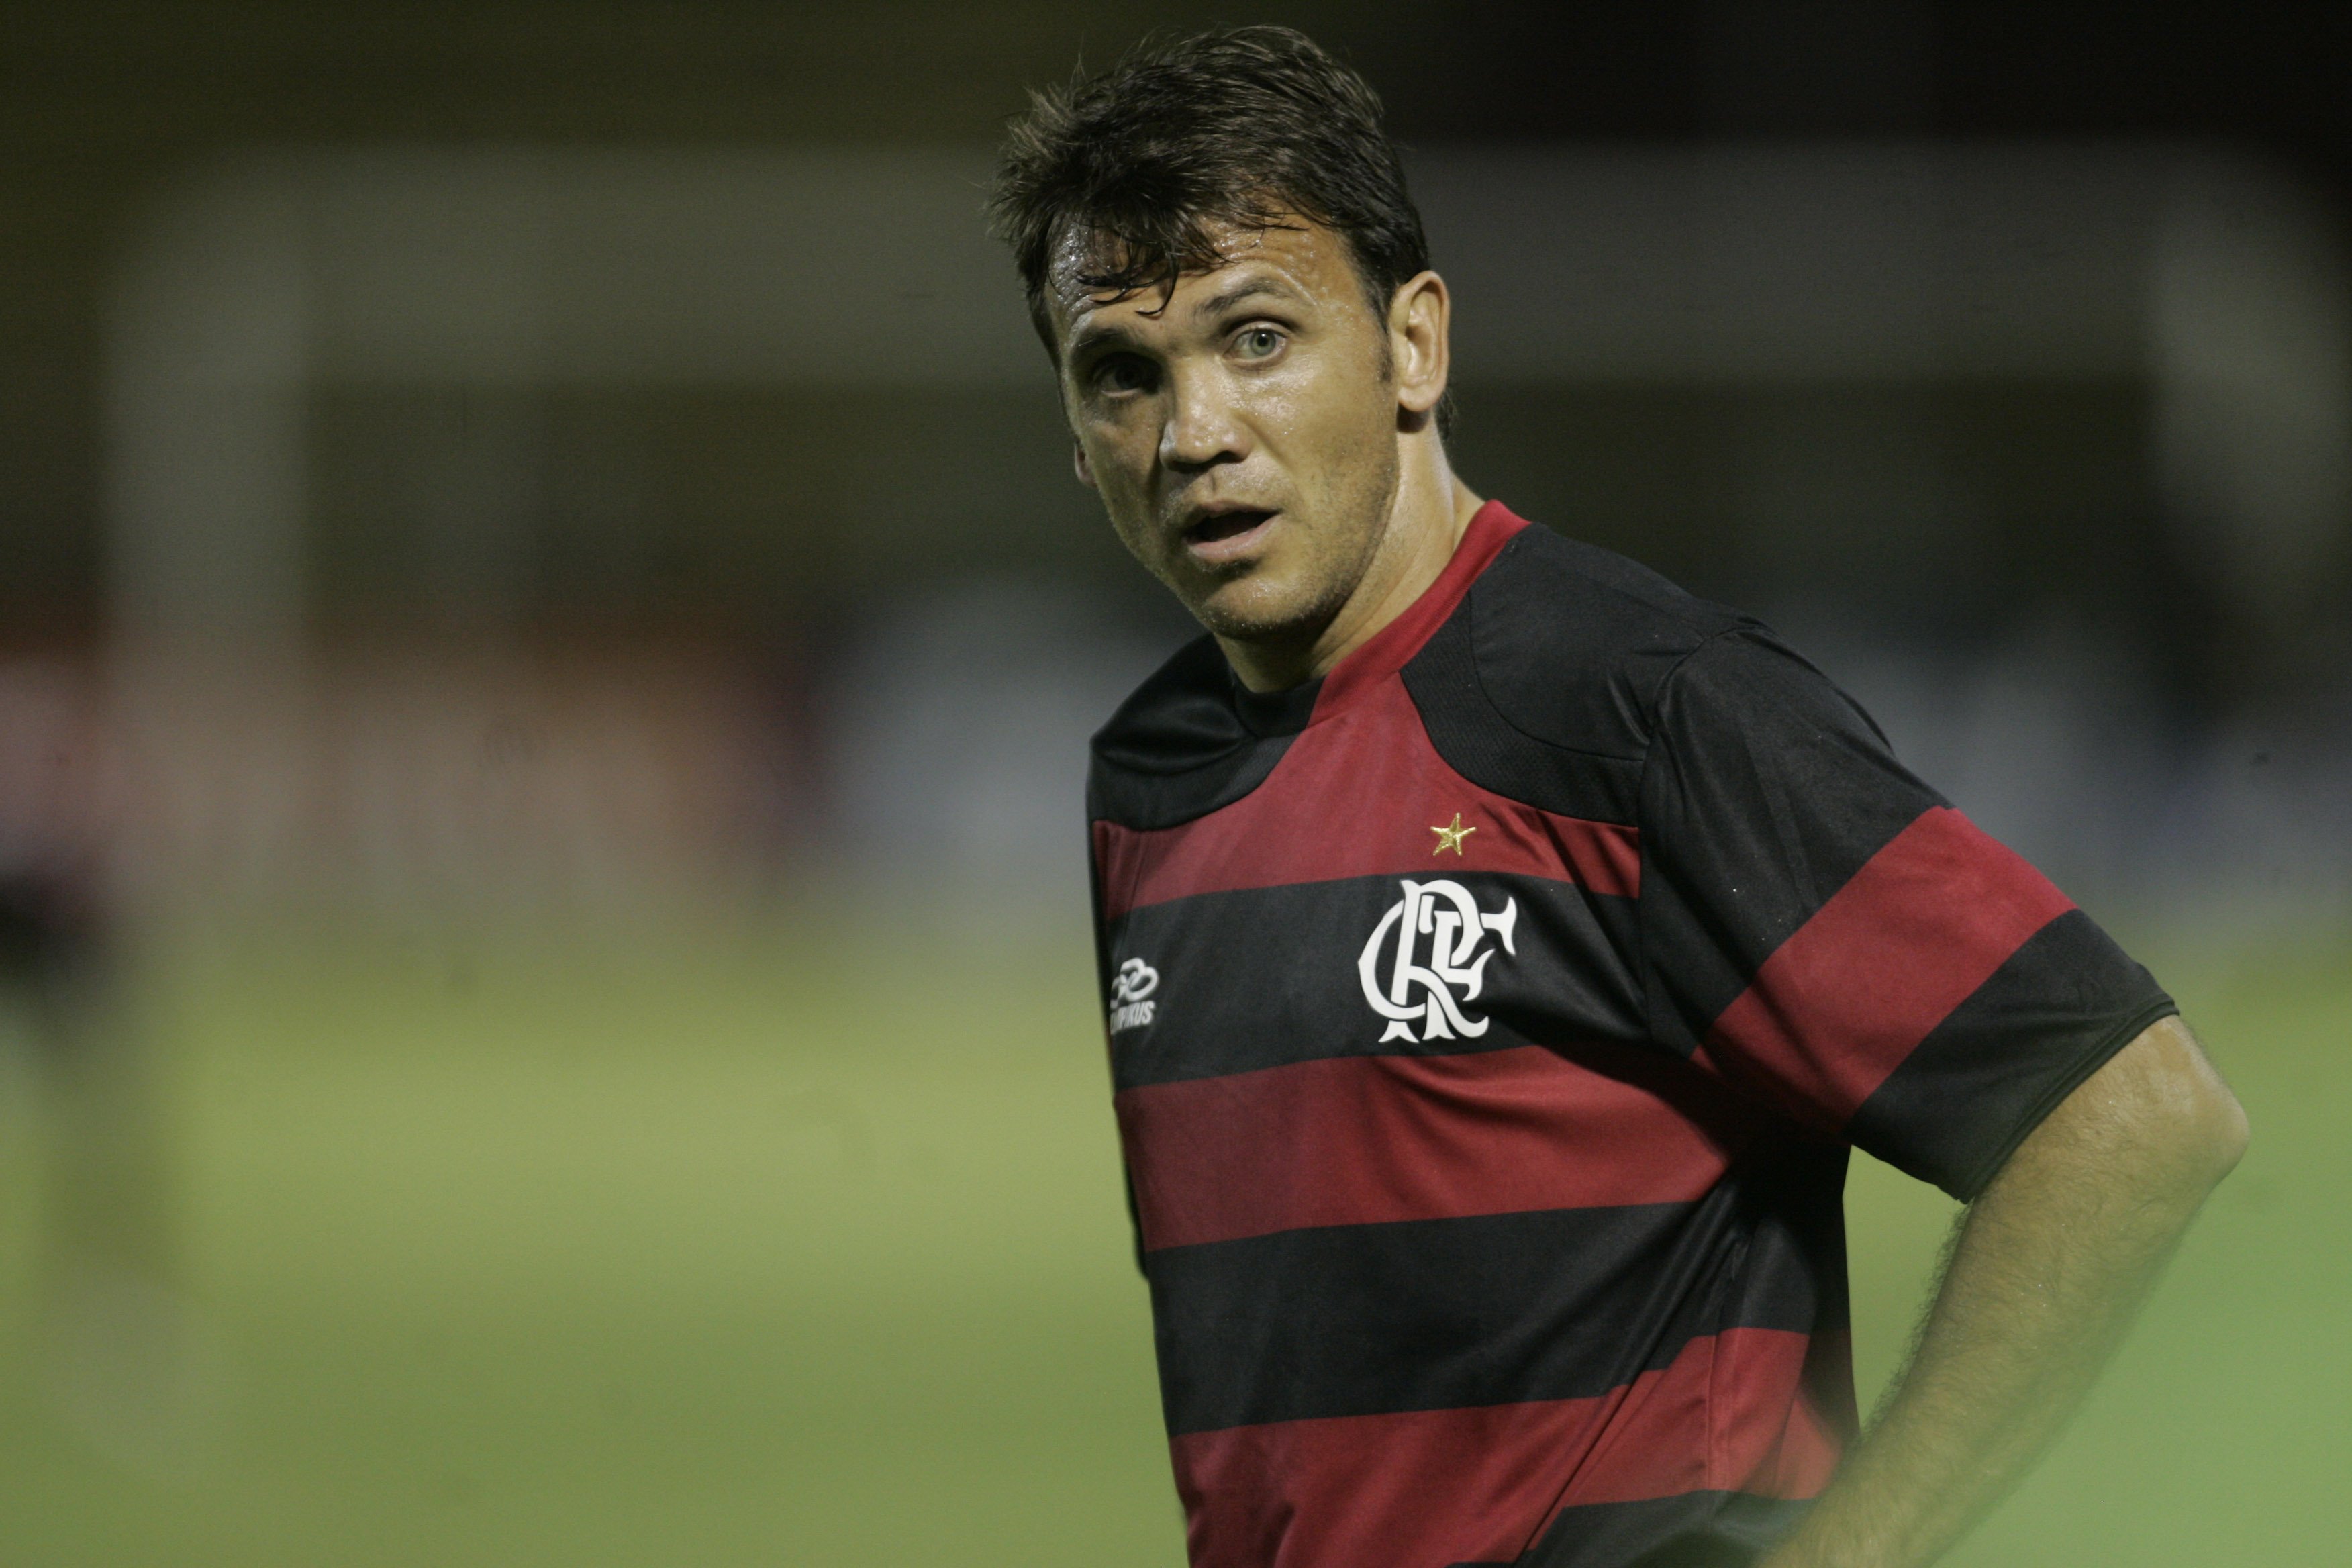 Dejan Petkovic jogou o Brasileirão por Vitória, Flamengo, Vasco, Fluminense, Goiás, Santos e Atlético-MG.